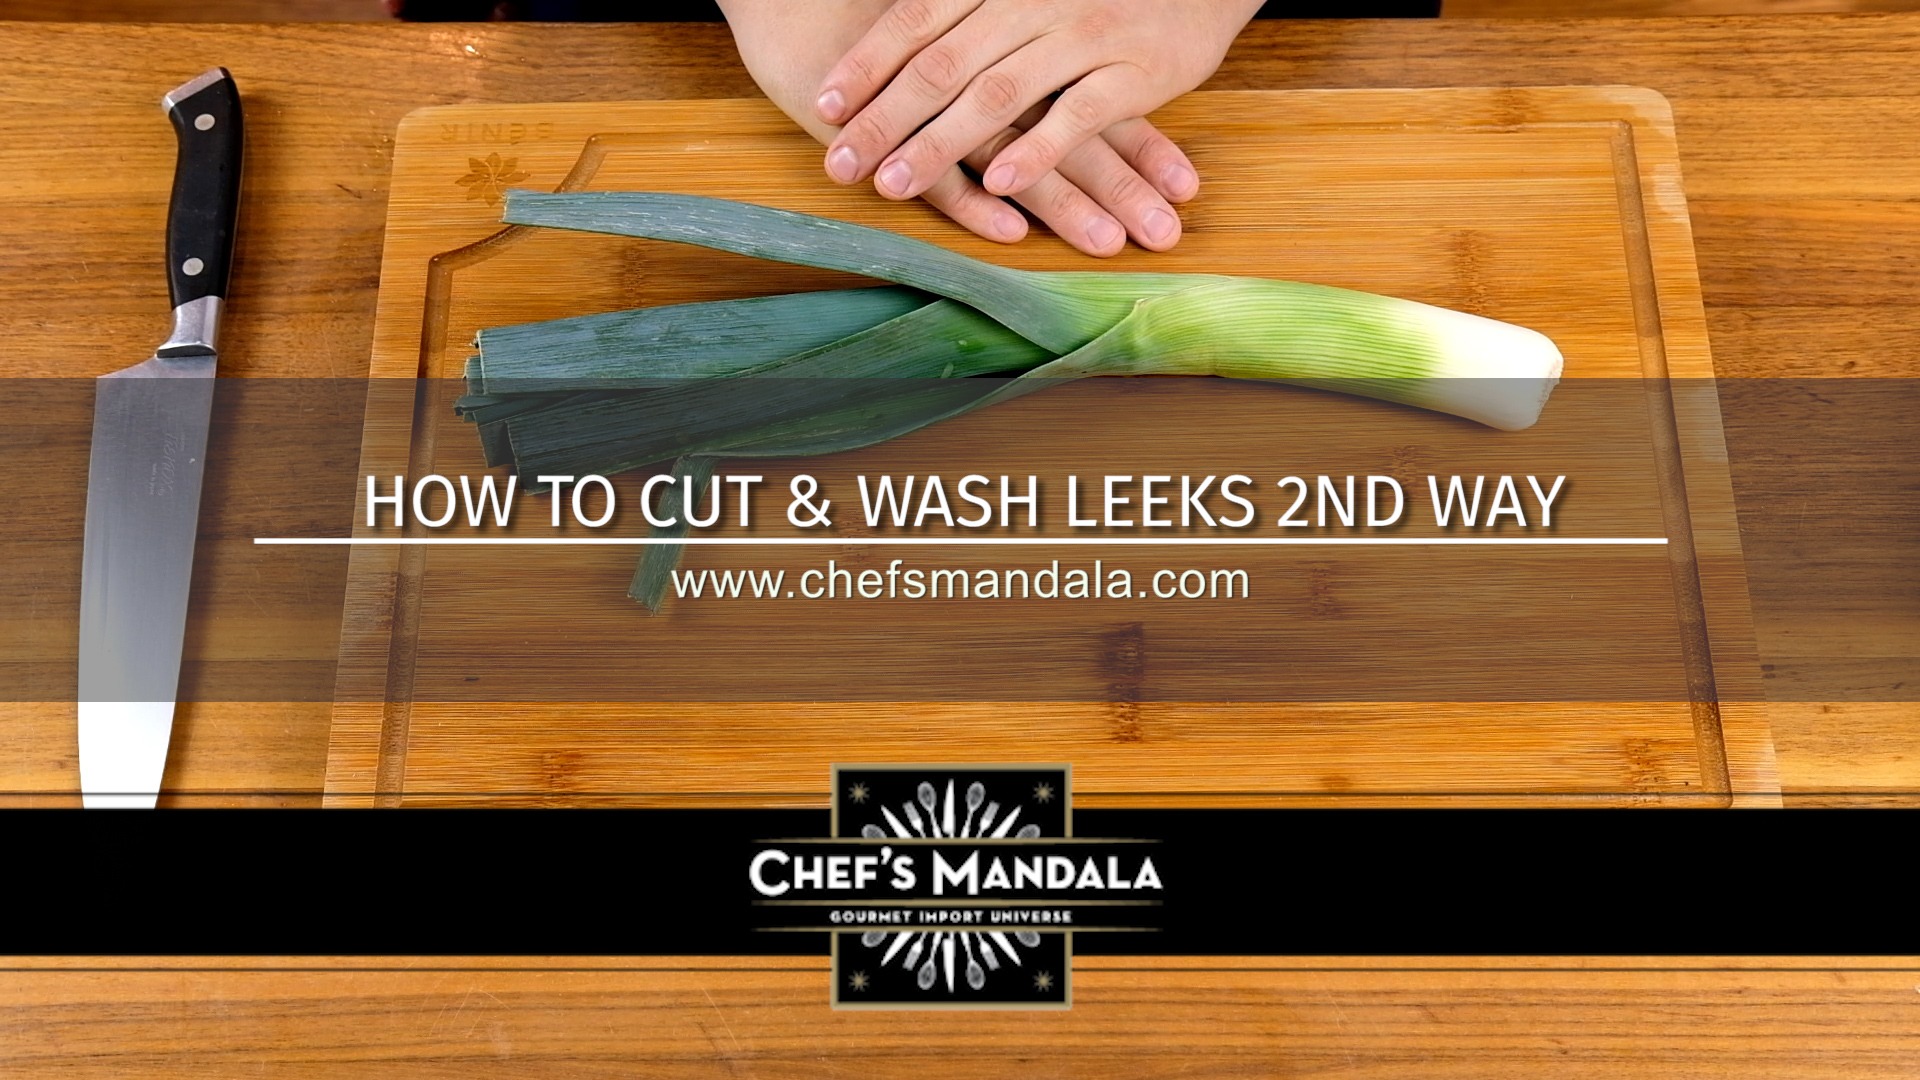 HOW TO CUT & WASH LEEKS 2ND WAY